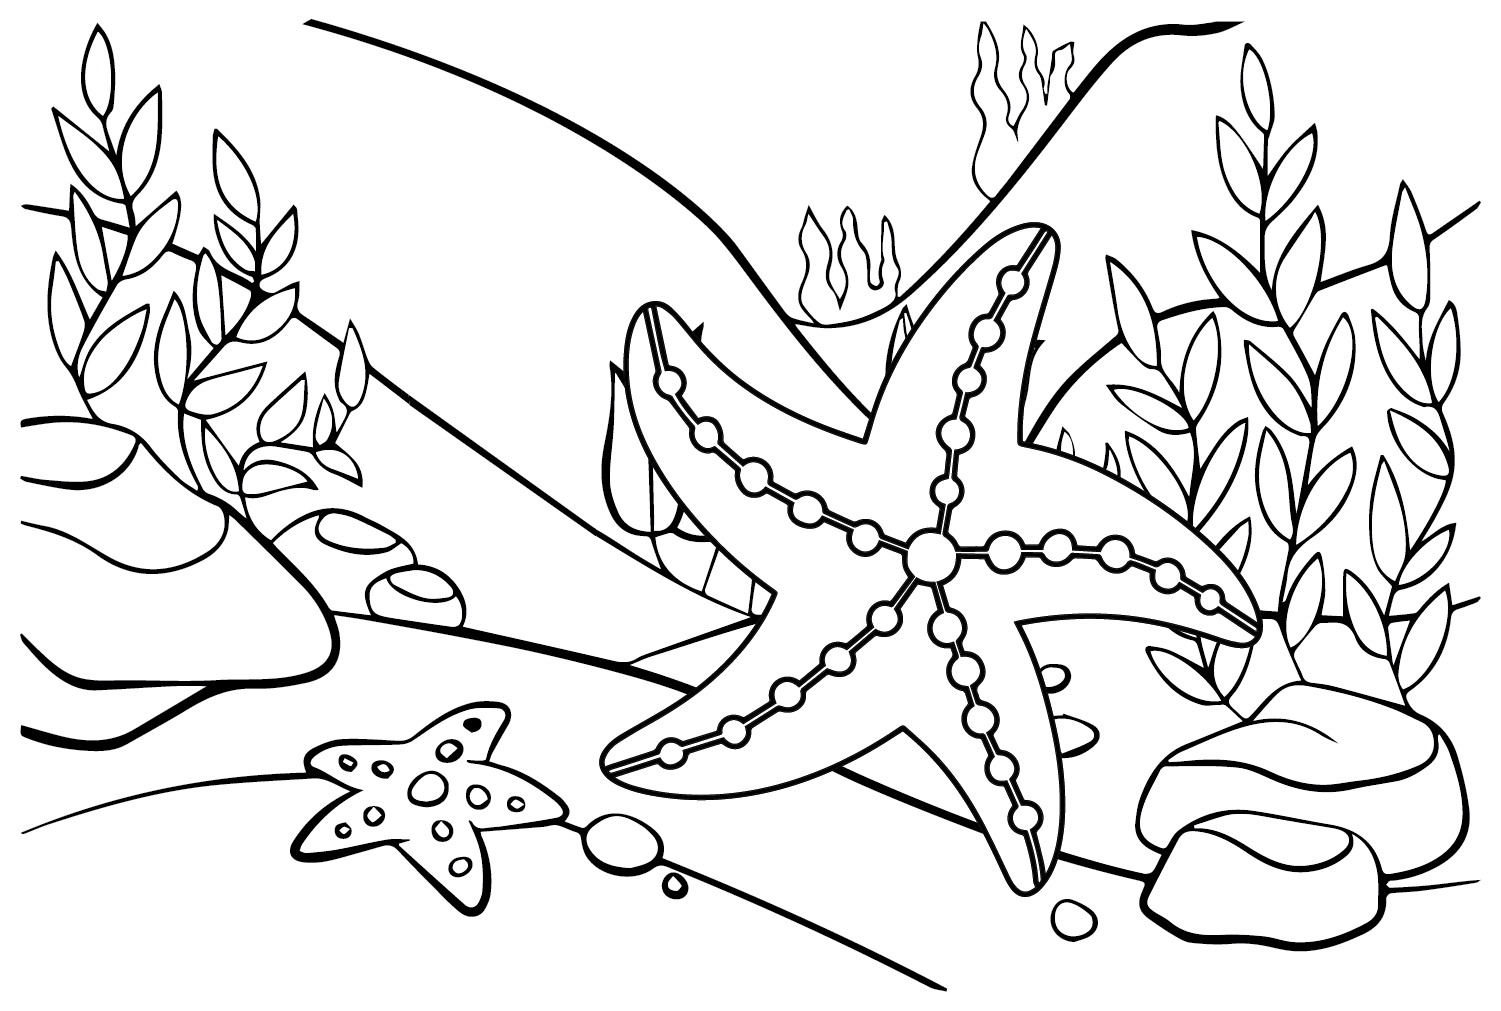 Traços de estrela do mar from Starfish